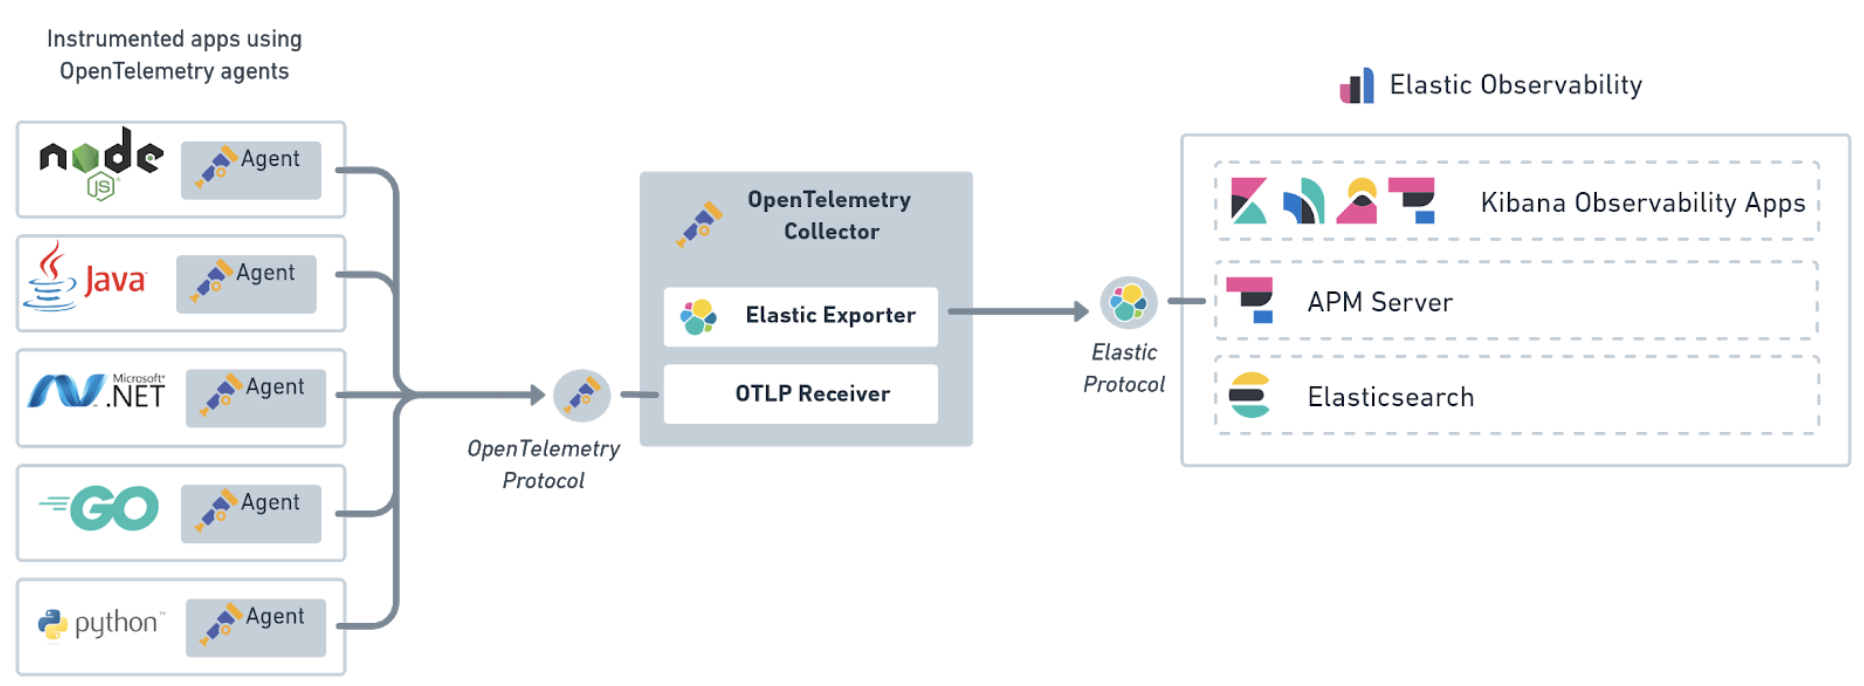 OpenTelemetry Elastic exporter